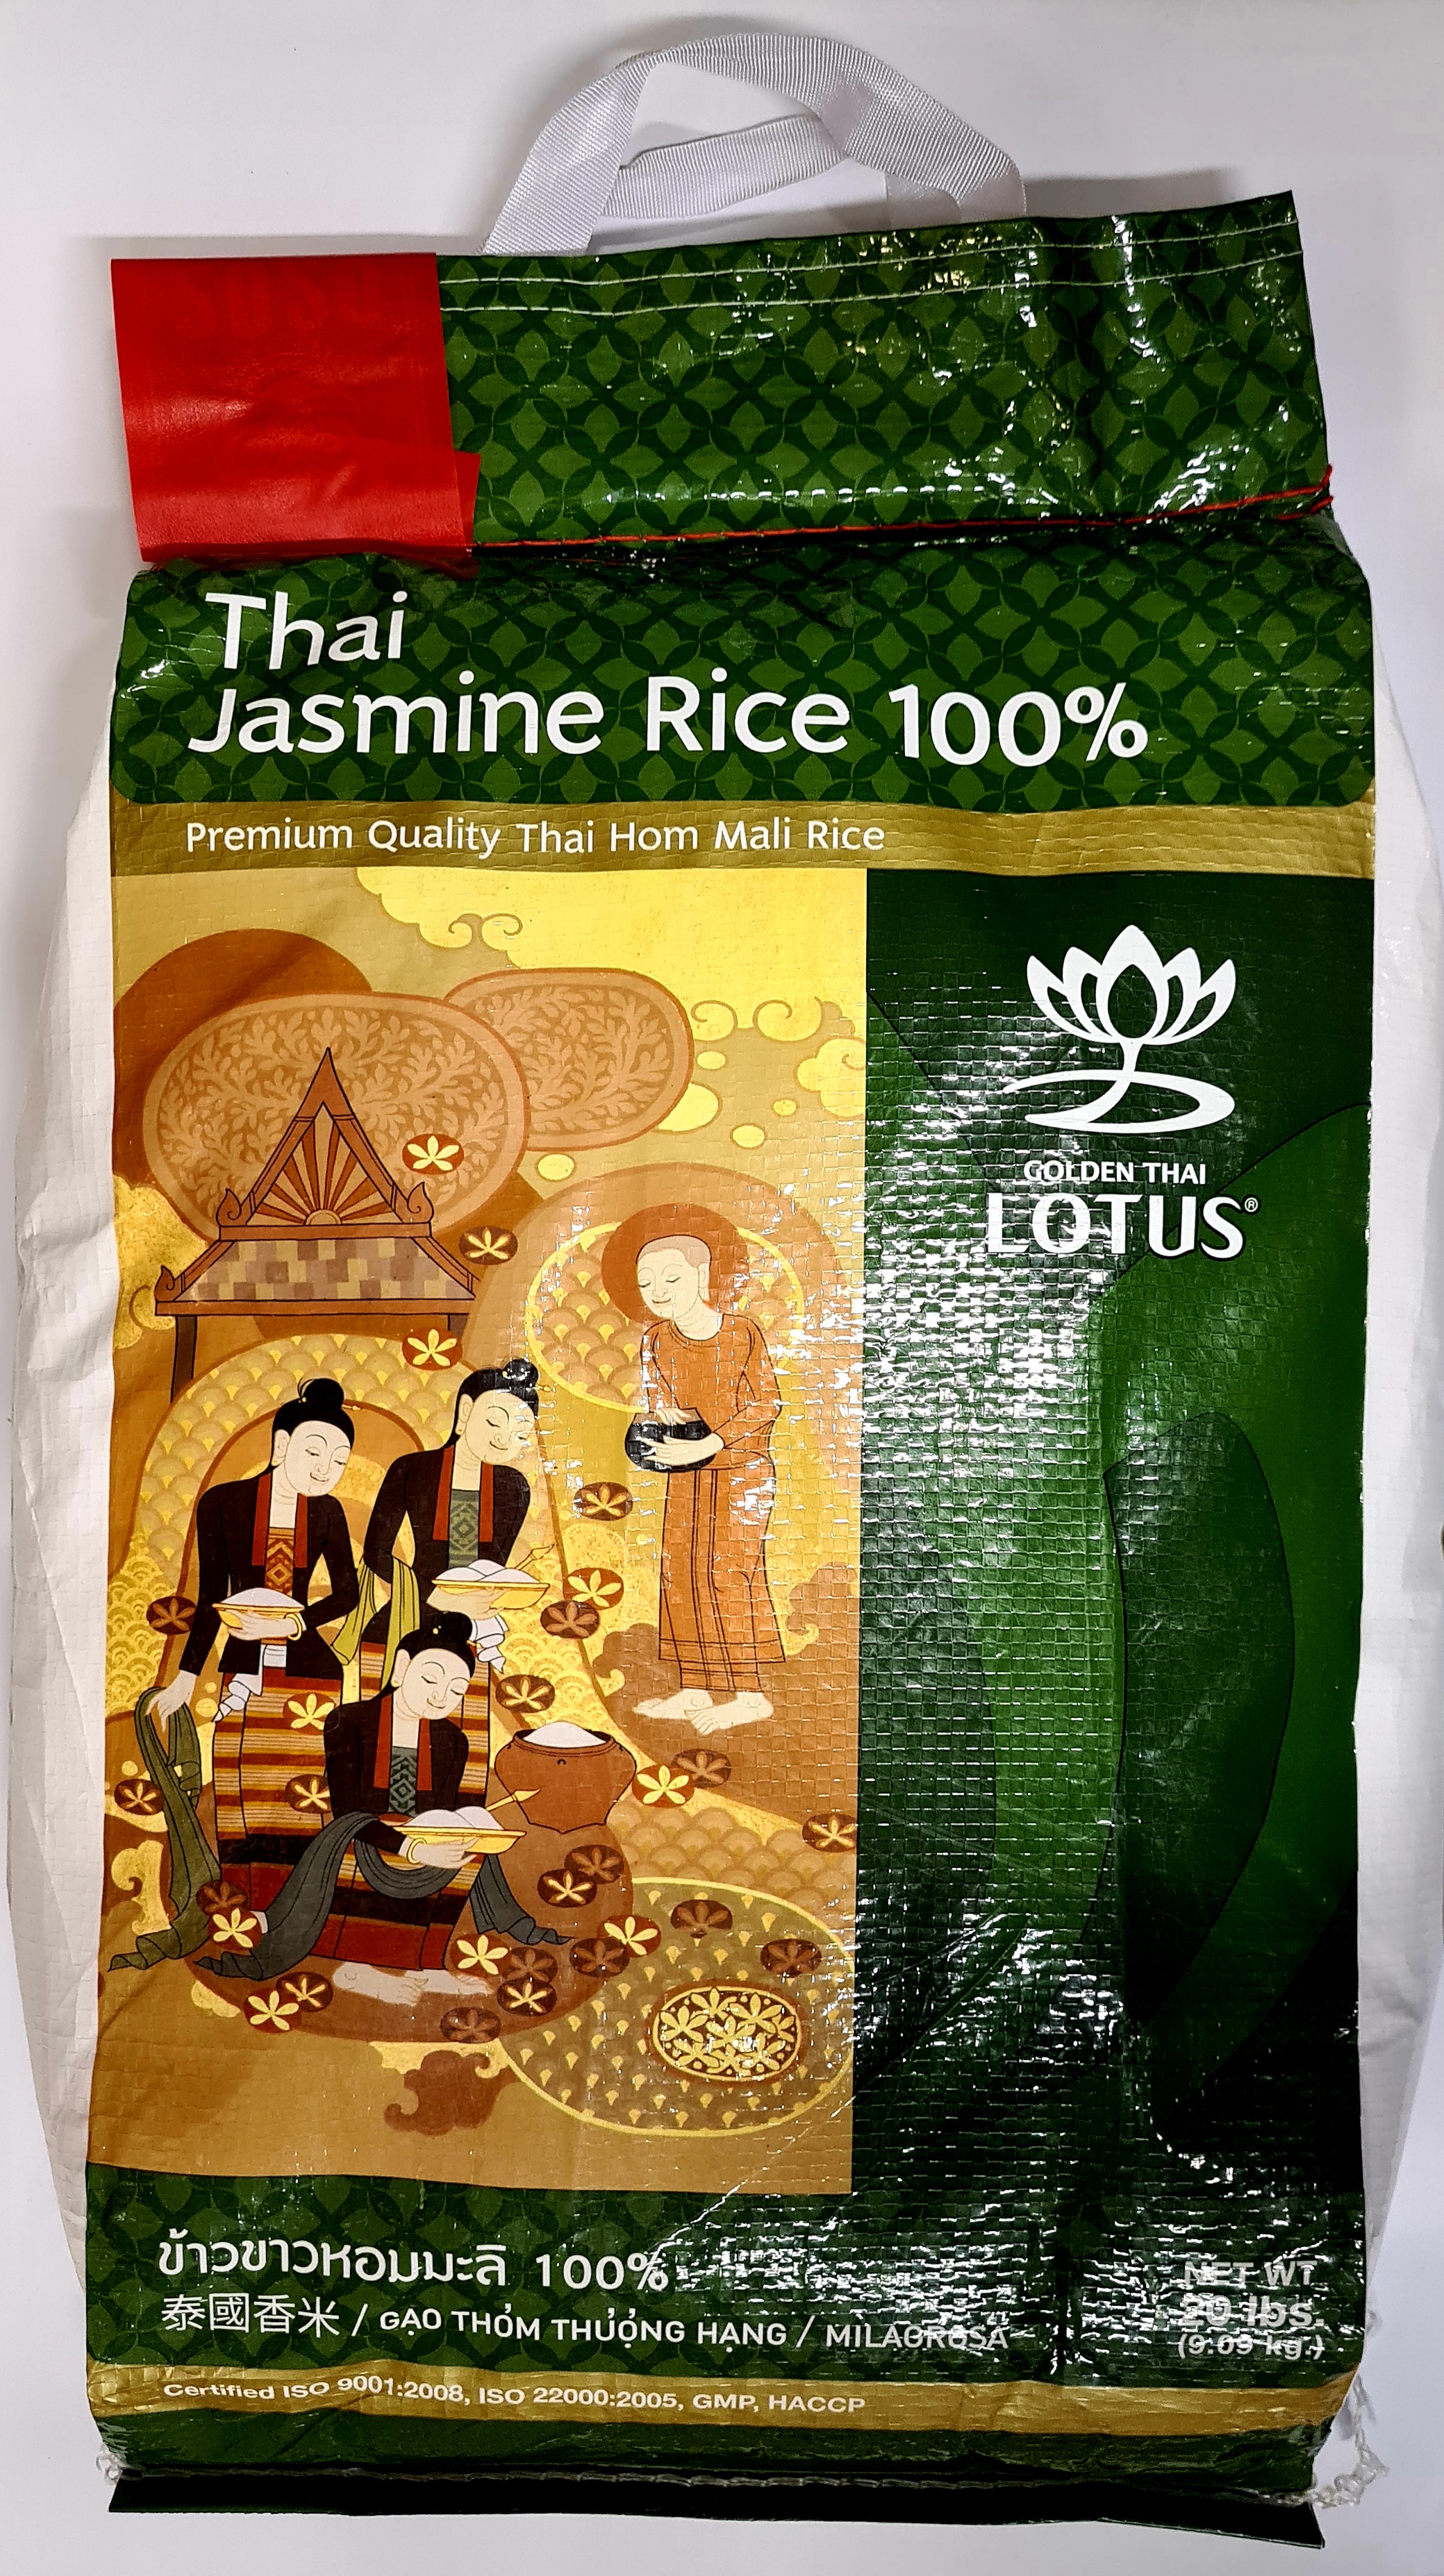 Thajská jasmínová ryža Golden Lotus